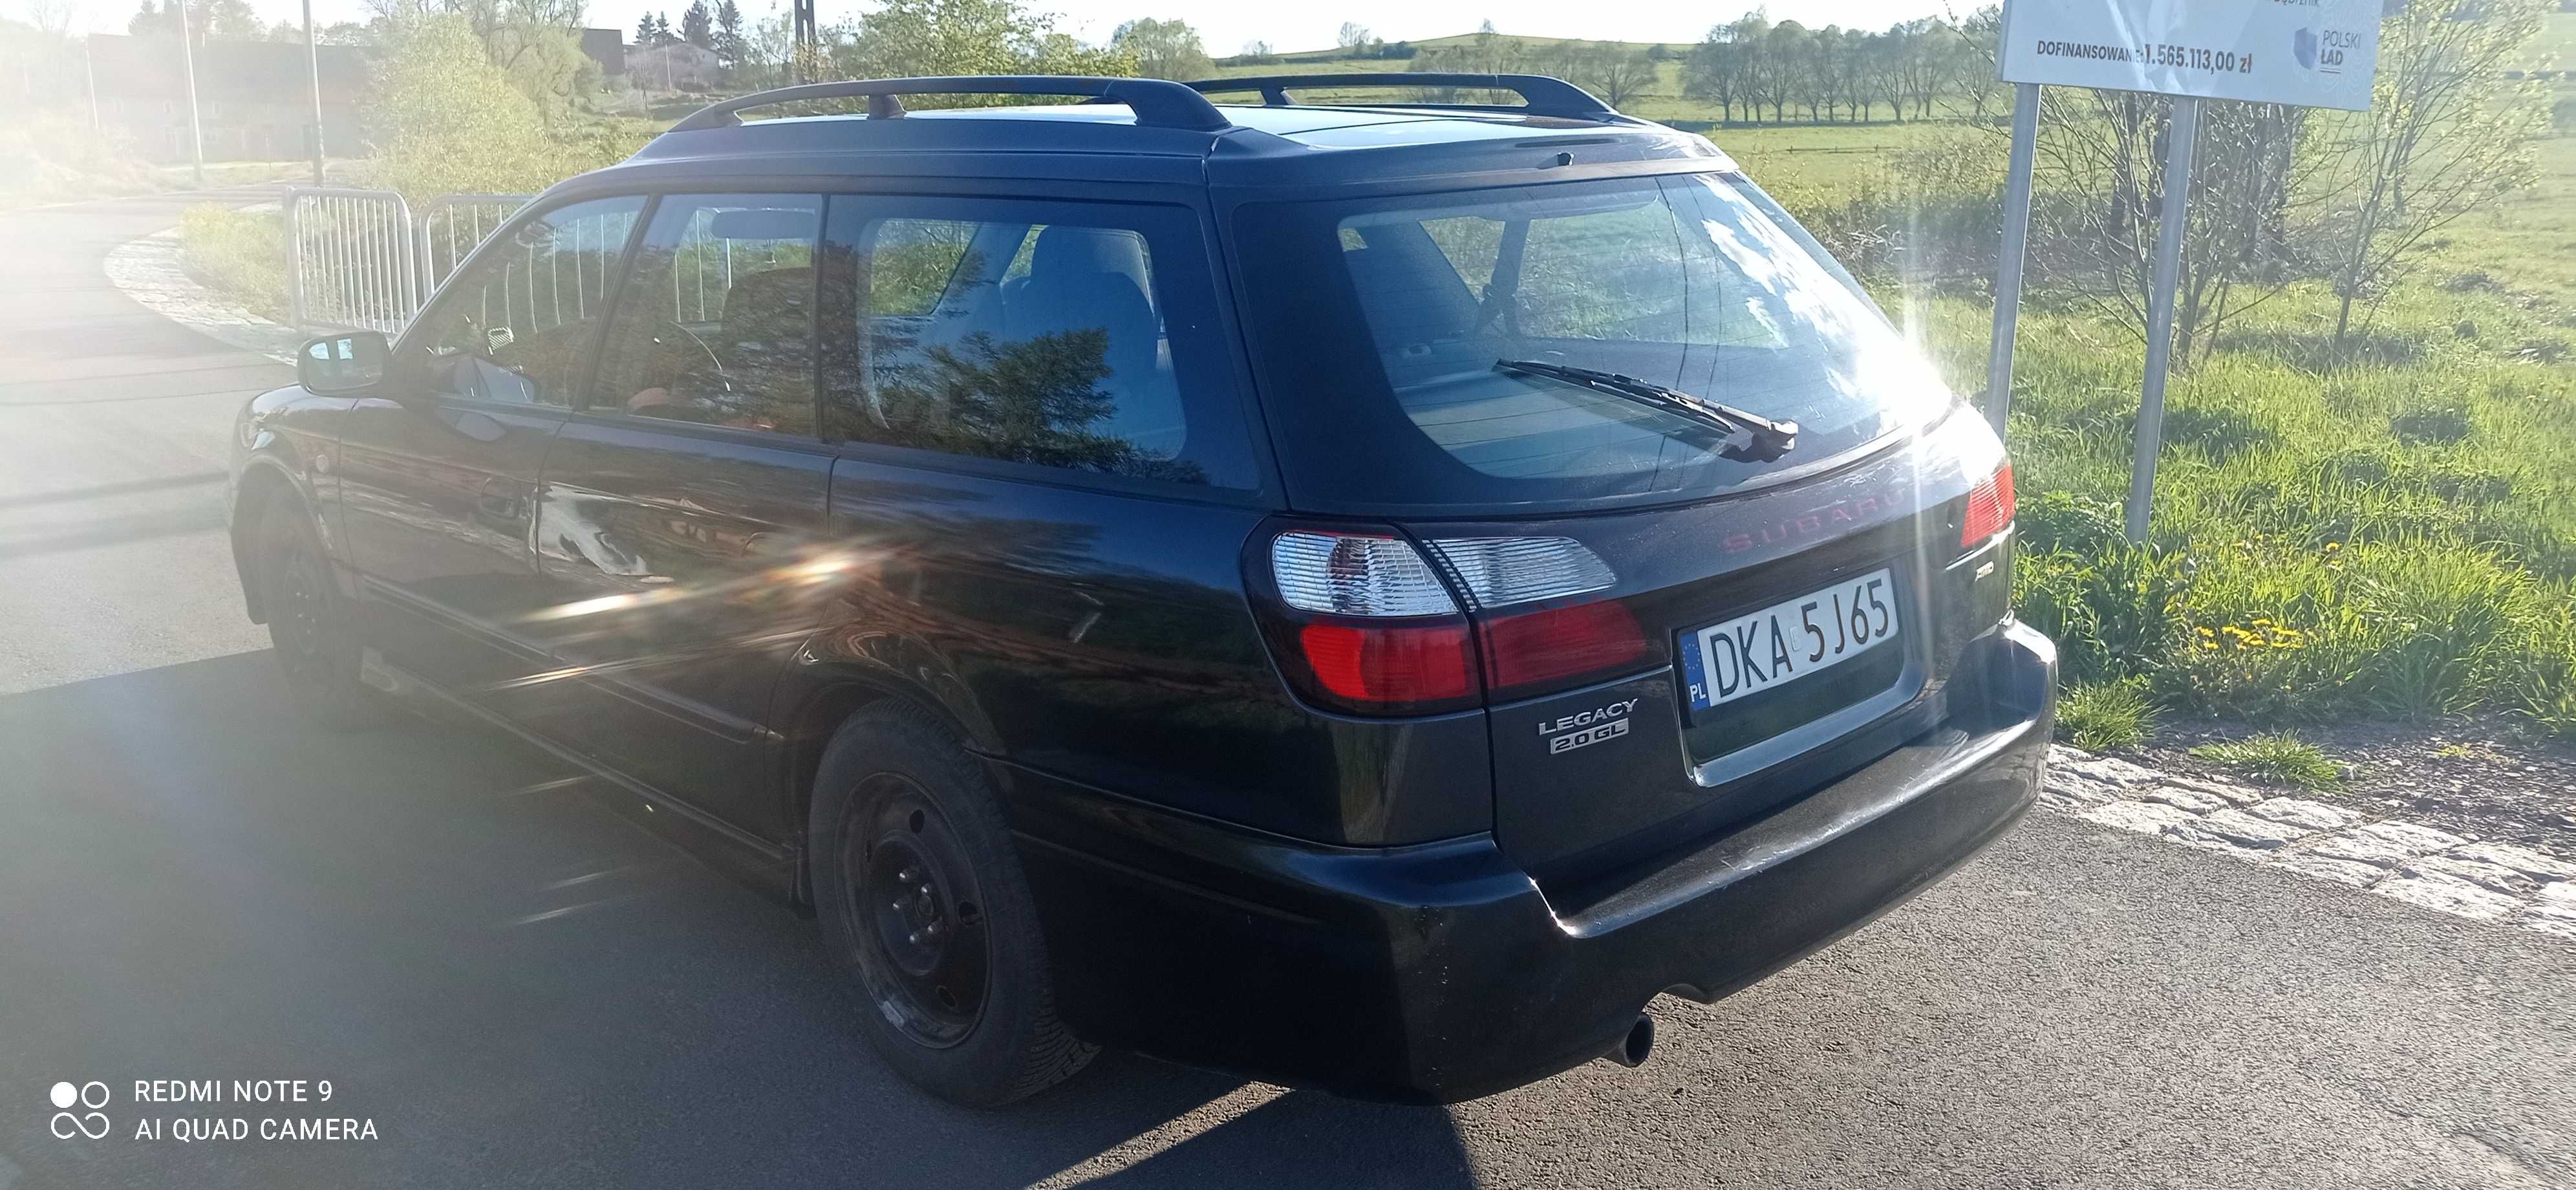 Subaru Legacy Kombi 2.0 benzyna